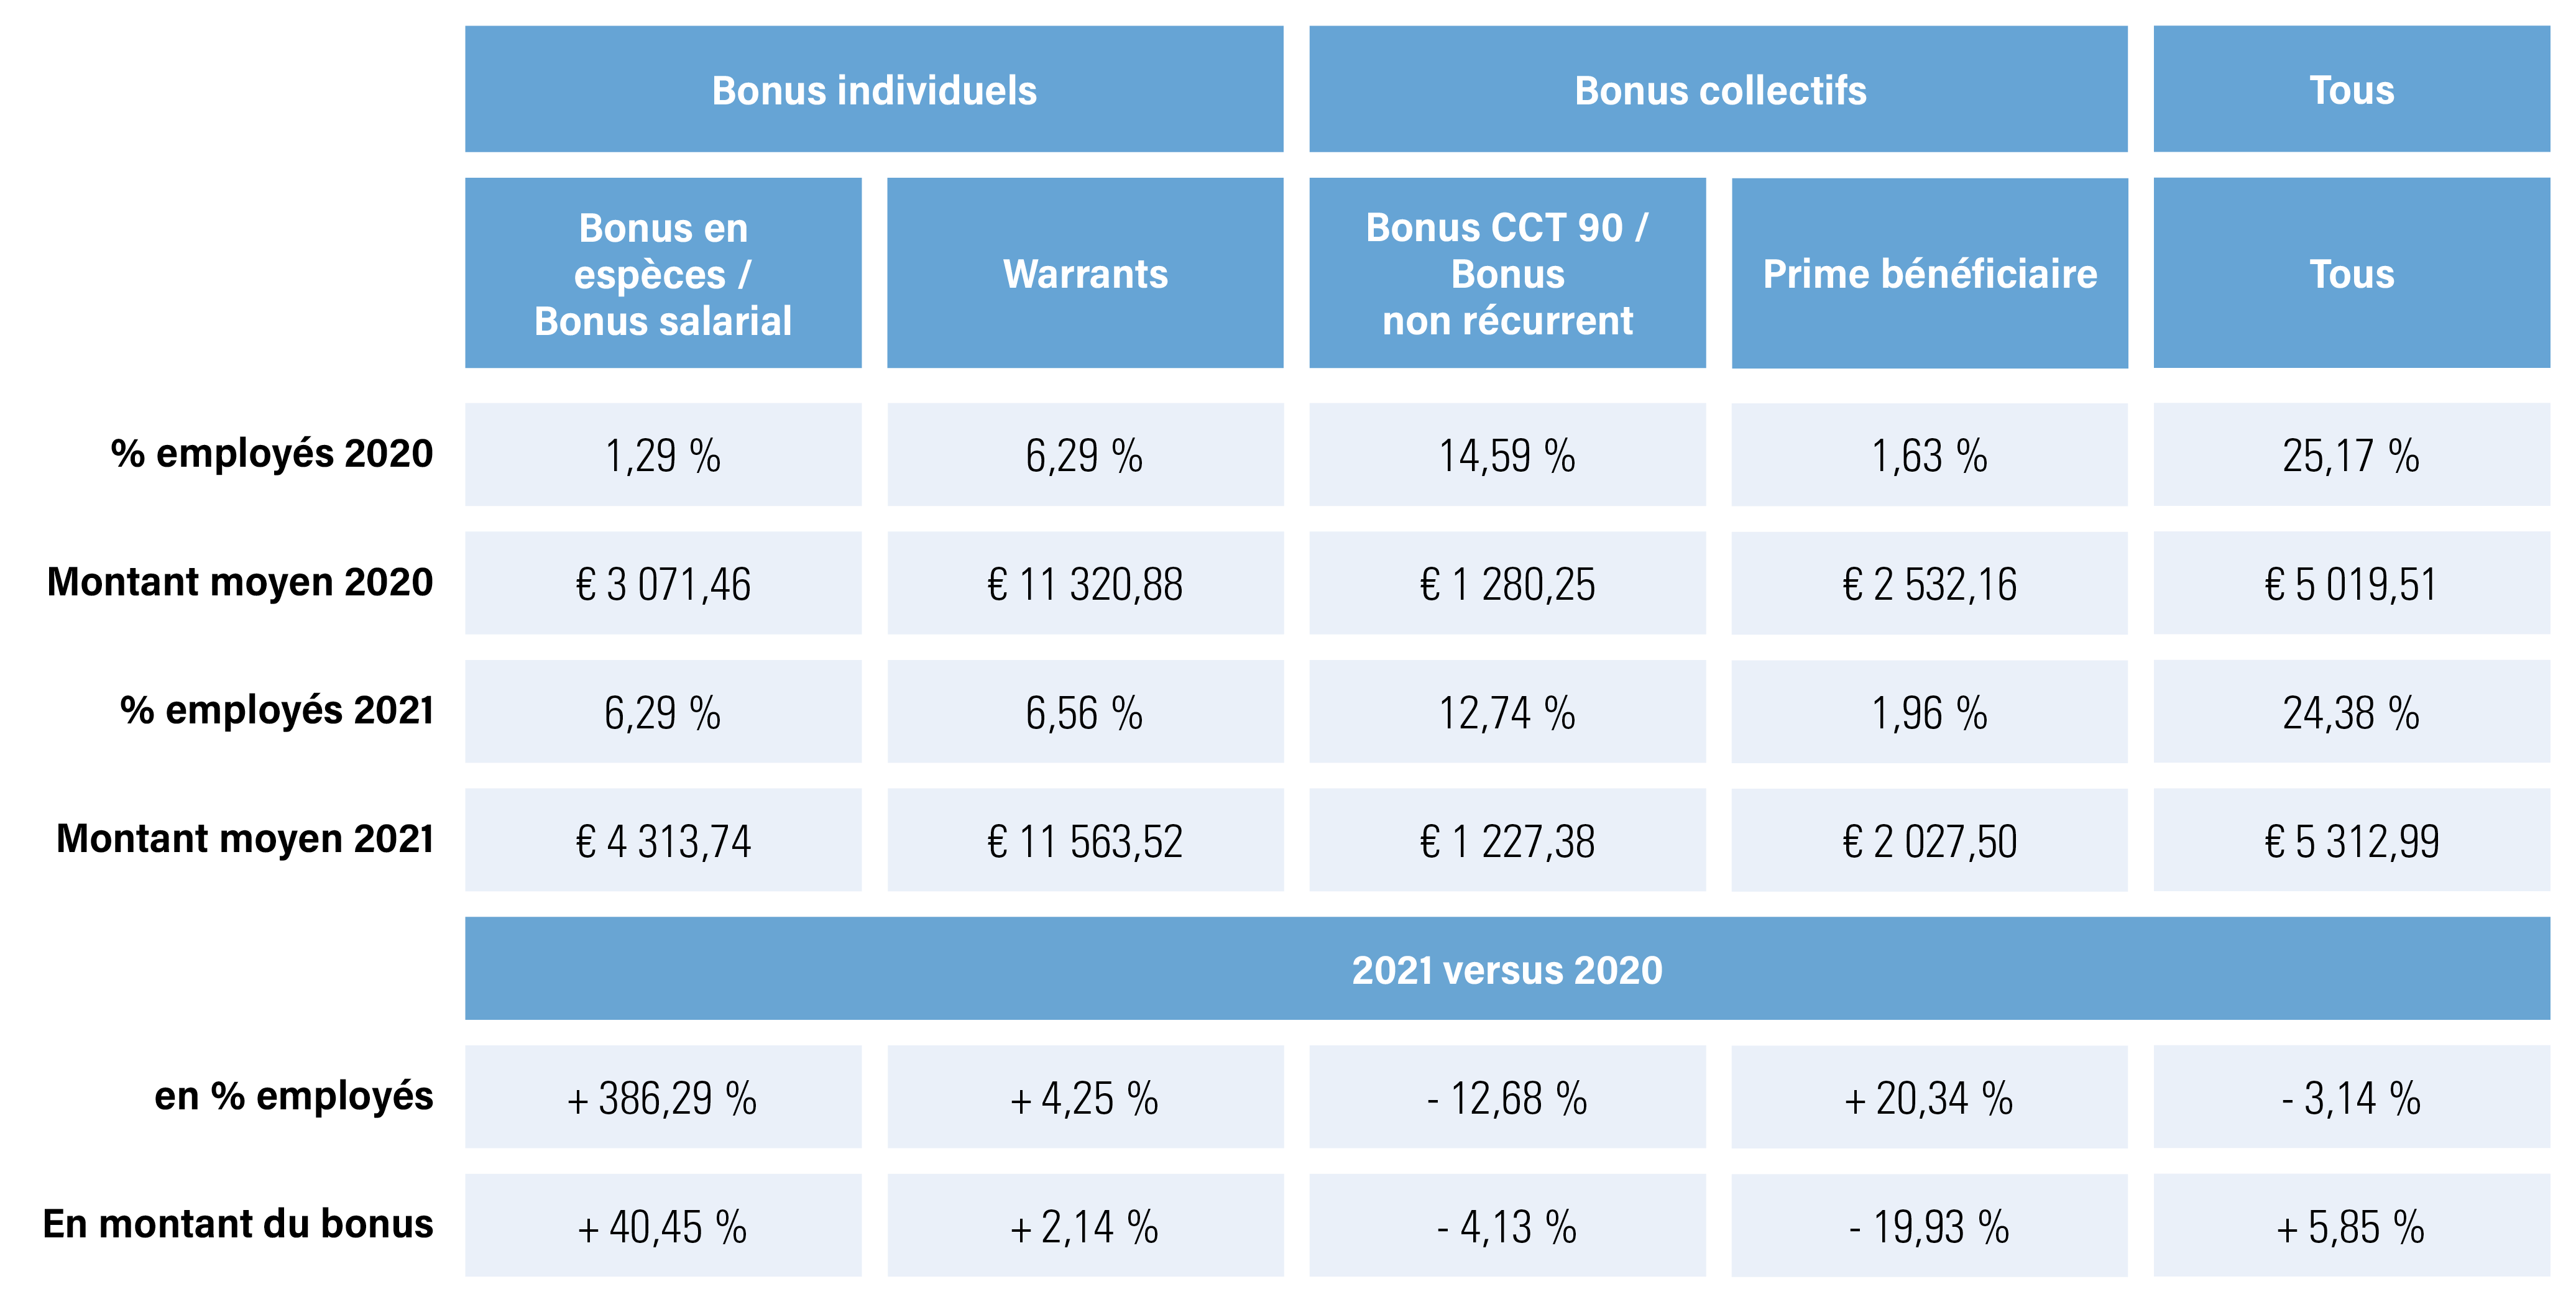 récapitulatif des bonus des employés du secteur marchand en % et montants, 2021, 2020 et comparaison